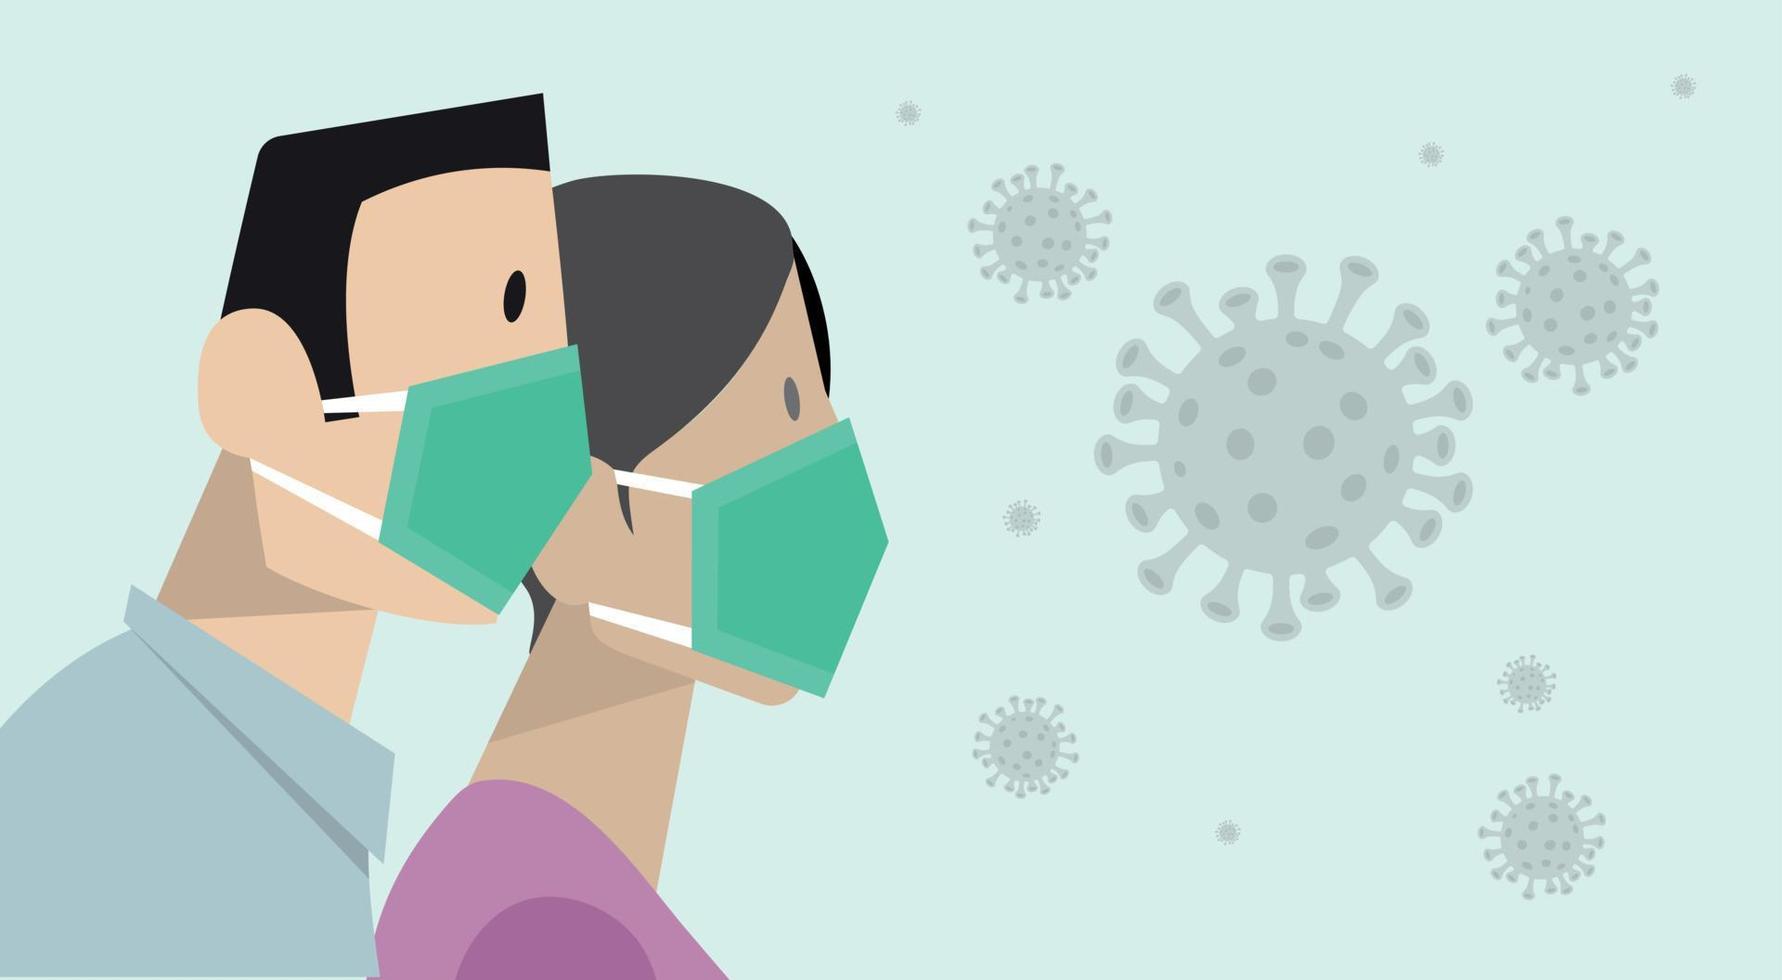 prévention du coronavirus covid-19 homme et femme portant un masque médical de protection chirurgicale. concept de quarantaine de coronavirus. vecteur